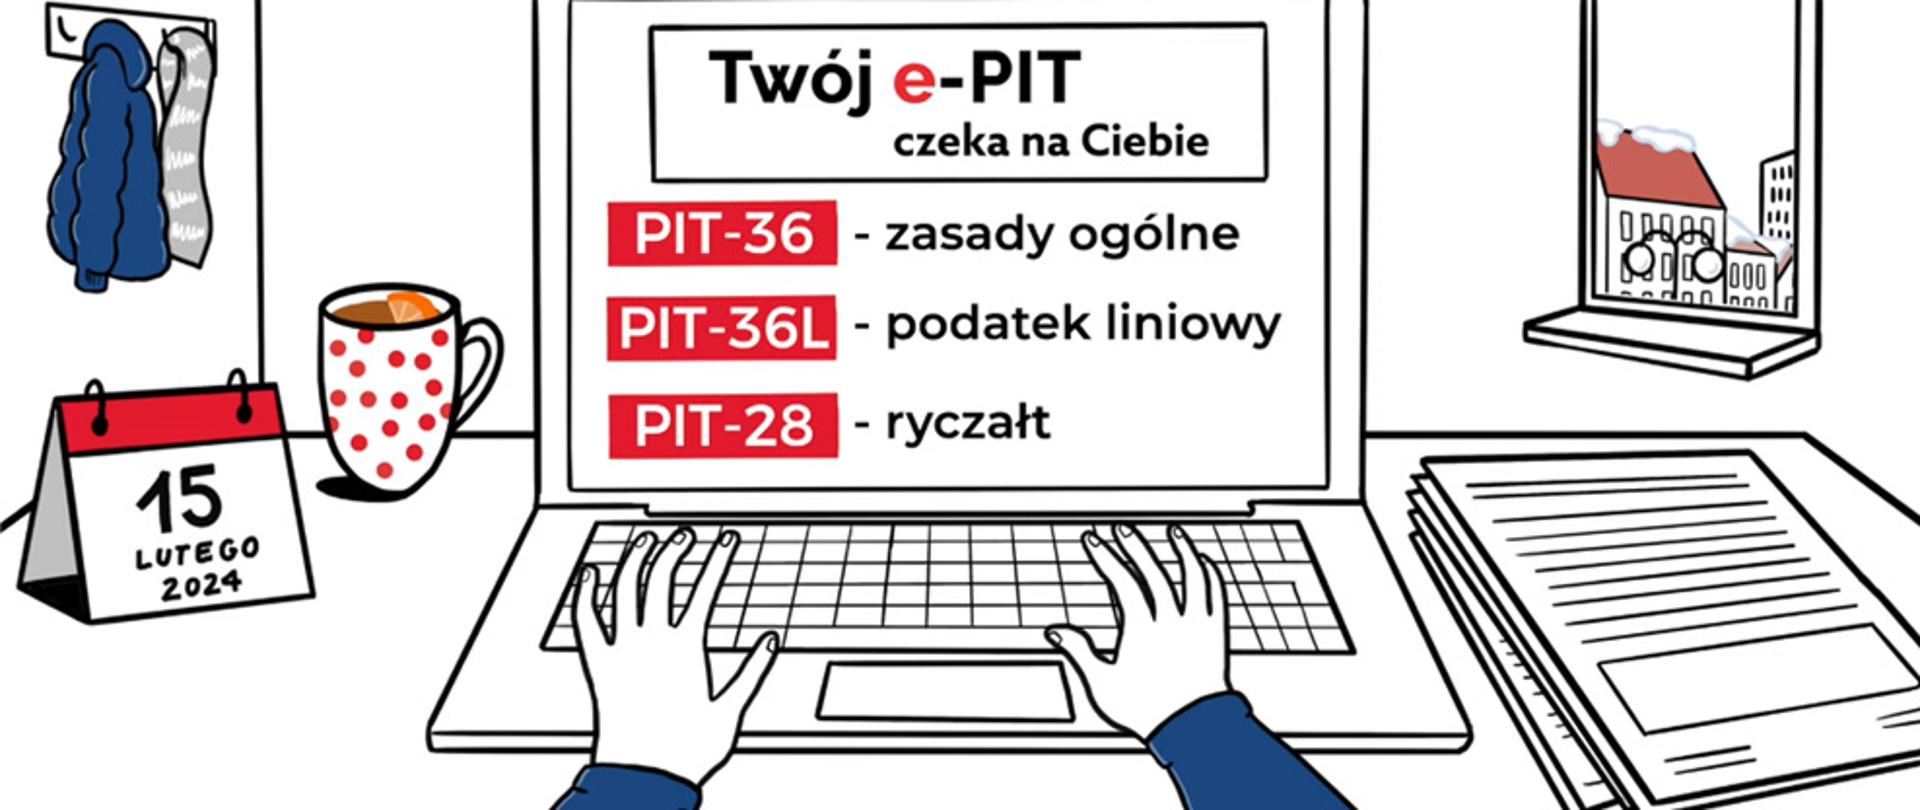 Grafika z dłońmi na klawiaturze komputera. Na ekranie napis Twój e-PIT czeka na Ciebie, PIT-36 zasady ogólne, PIT-36L podatek liniowy, PI-28 ryczałt. Obok komputera napis 15 lutego 2024.